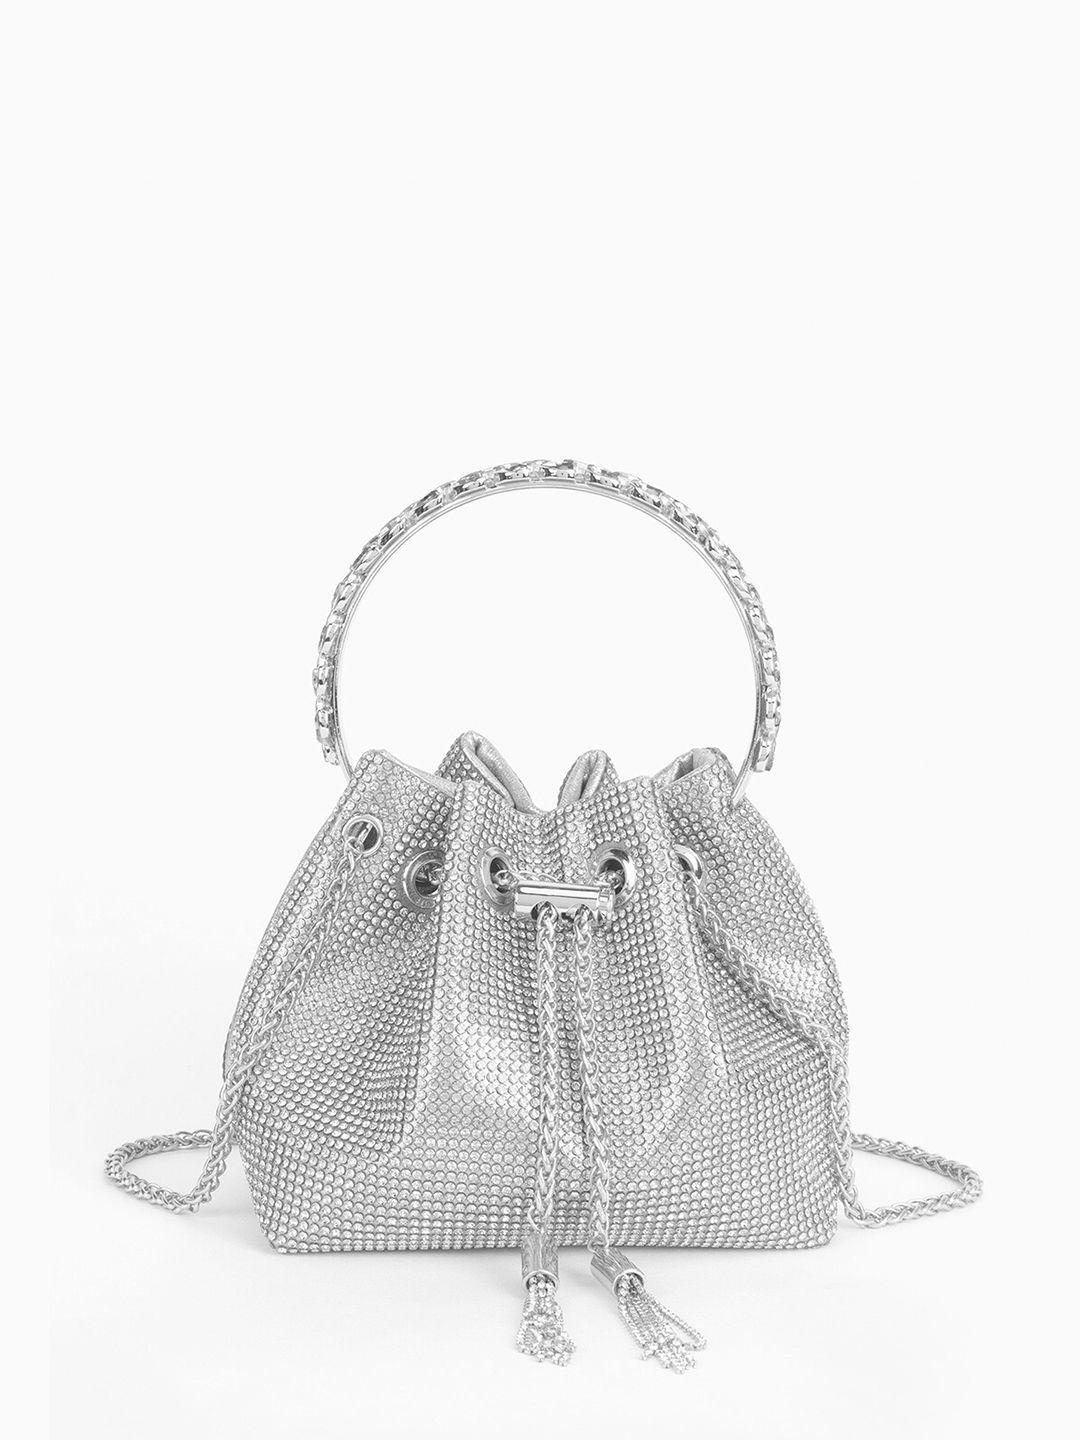 kazo embellished purse clutch